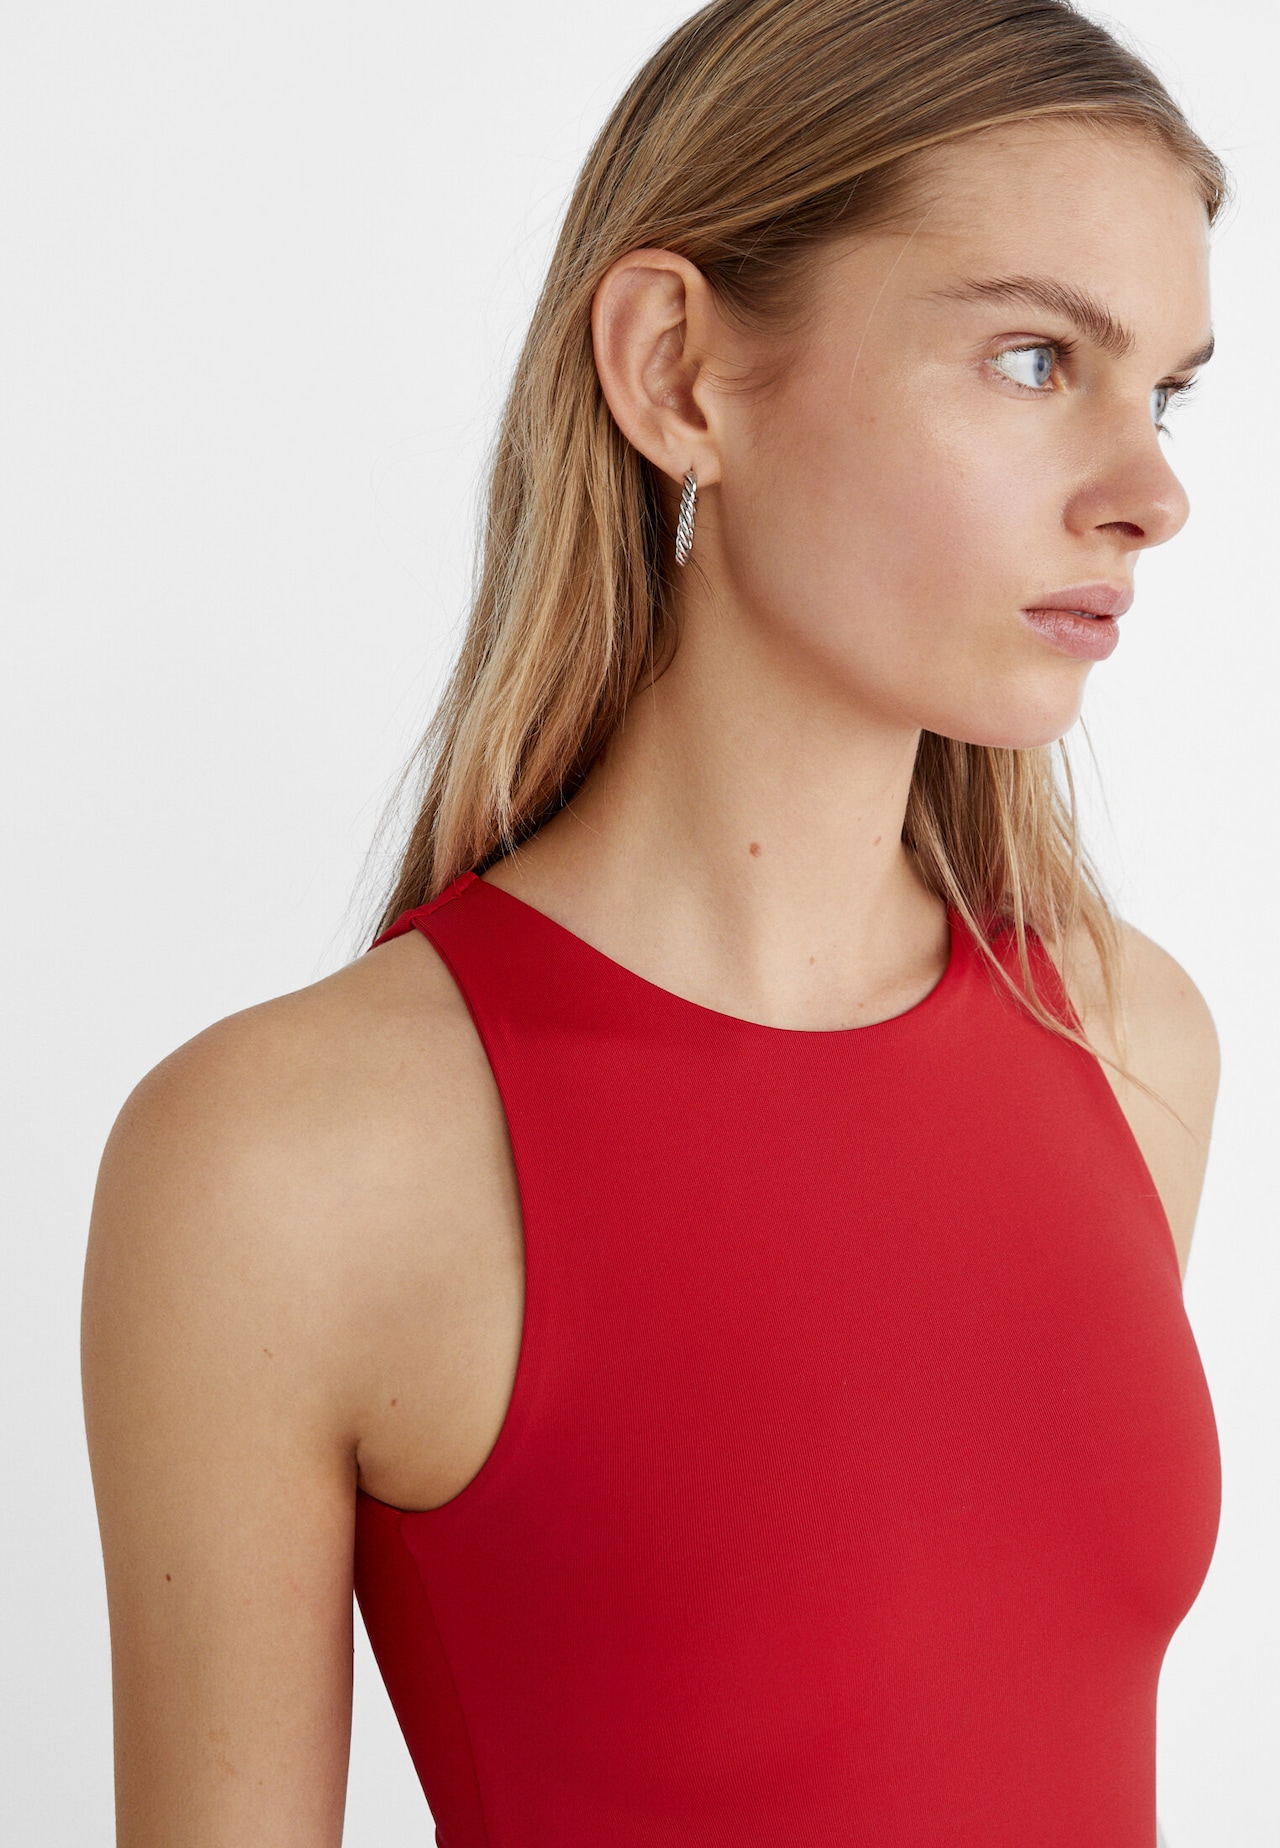 Estilosas by Cami - Body cuello V disponible en rojo, algodón elasticado,  confección nacional , $9.990 y 2 x $18.000